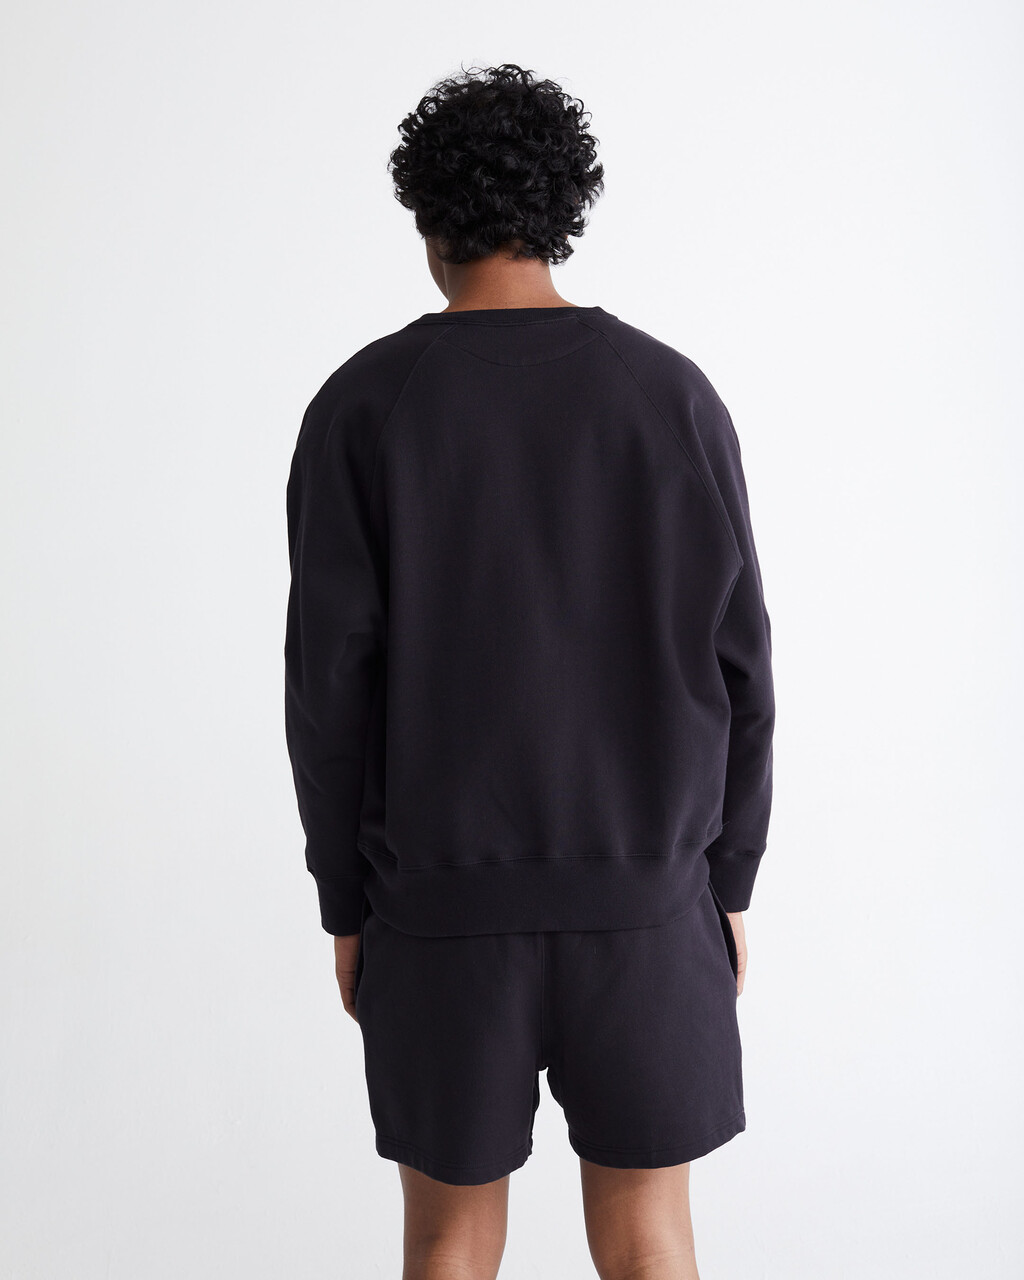 Standards Fleece Crewneck Sweatshirt, BLACK BEAUTY-00, hi-res